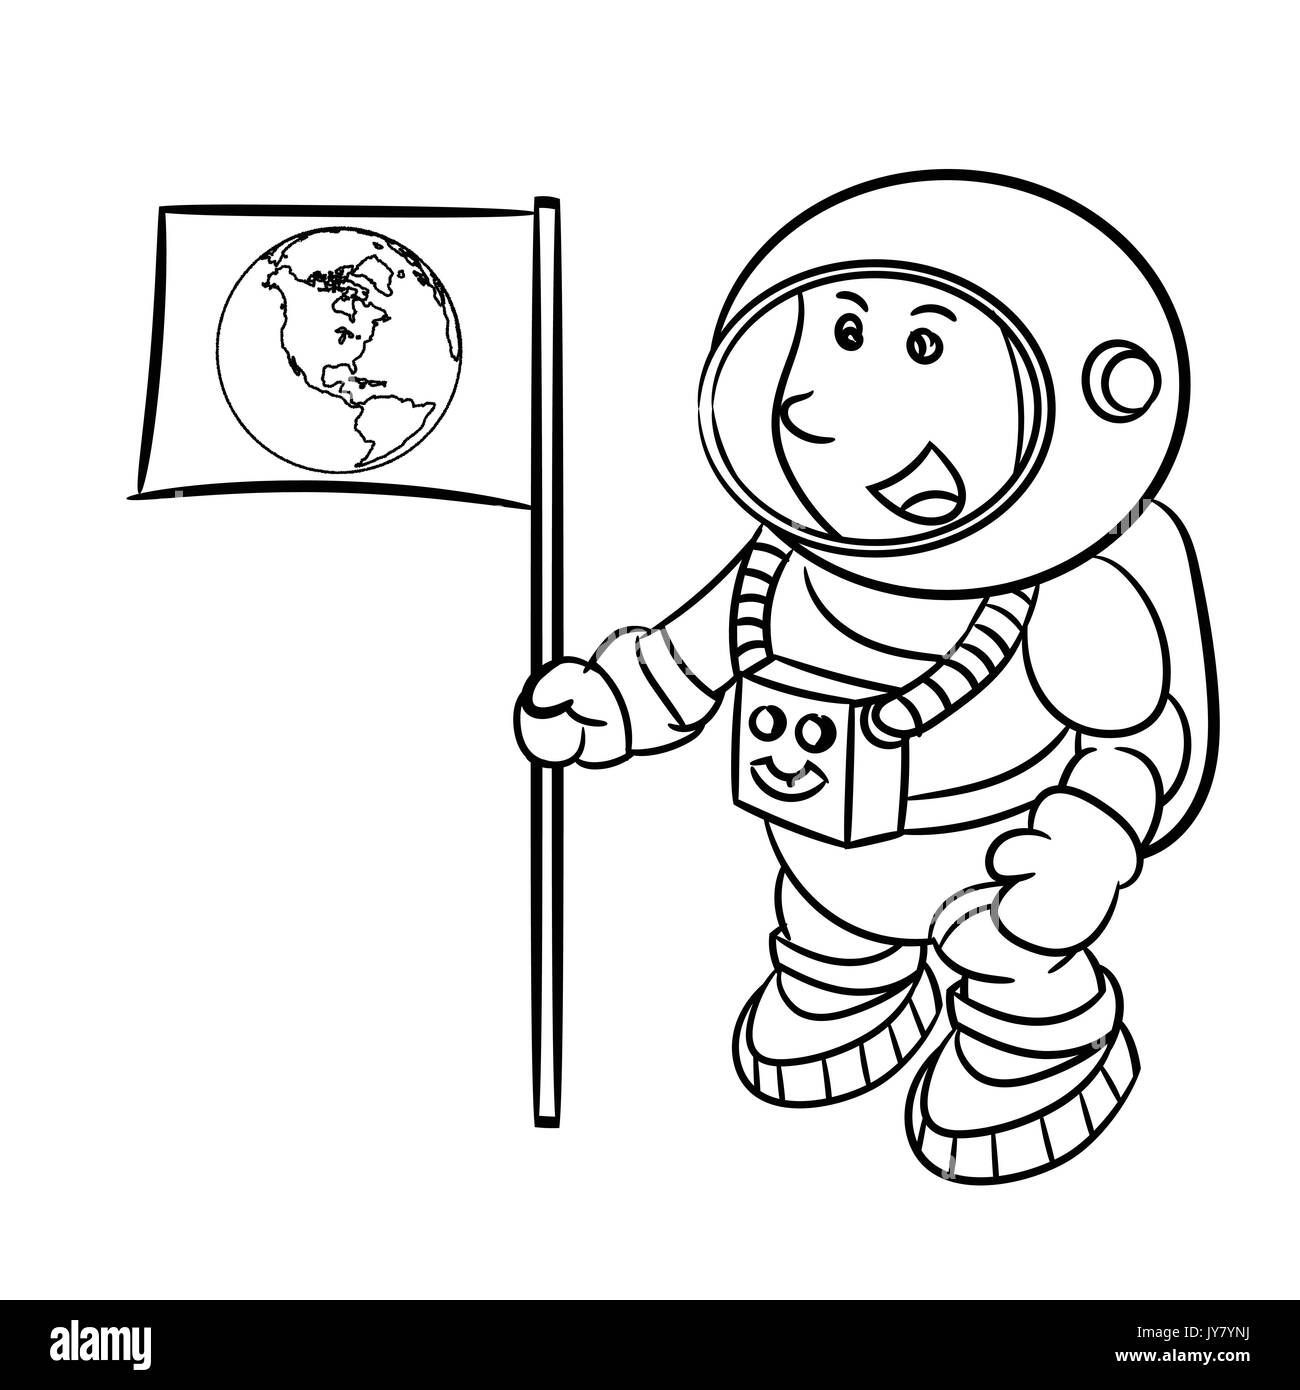 Croquis dessinés à la main, de l'astronaute isolé, noir et blanc Cartoon Vector Illustration pour livre de coloriage - Ligne dessinée Vector Illustration de Vecteur